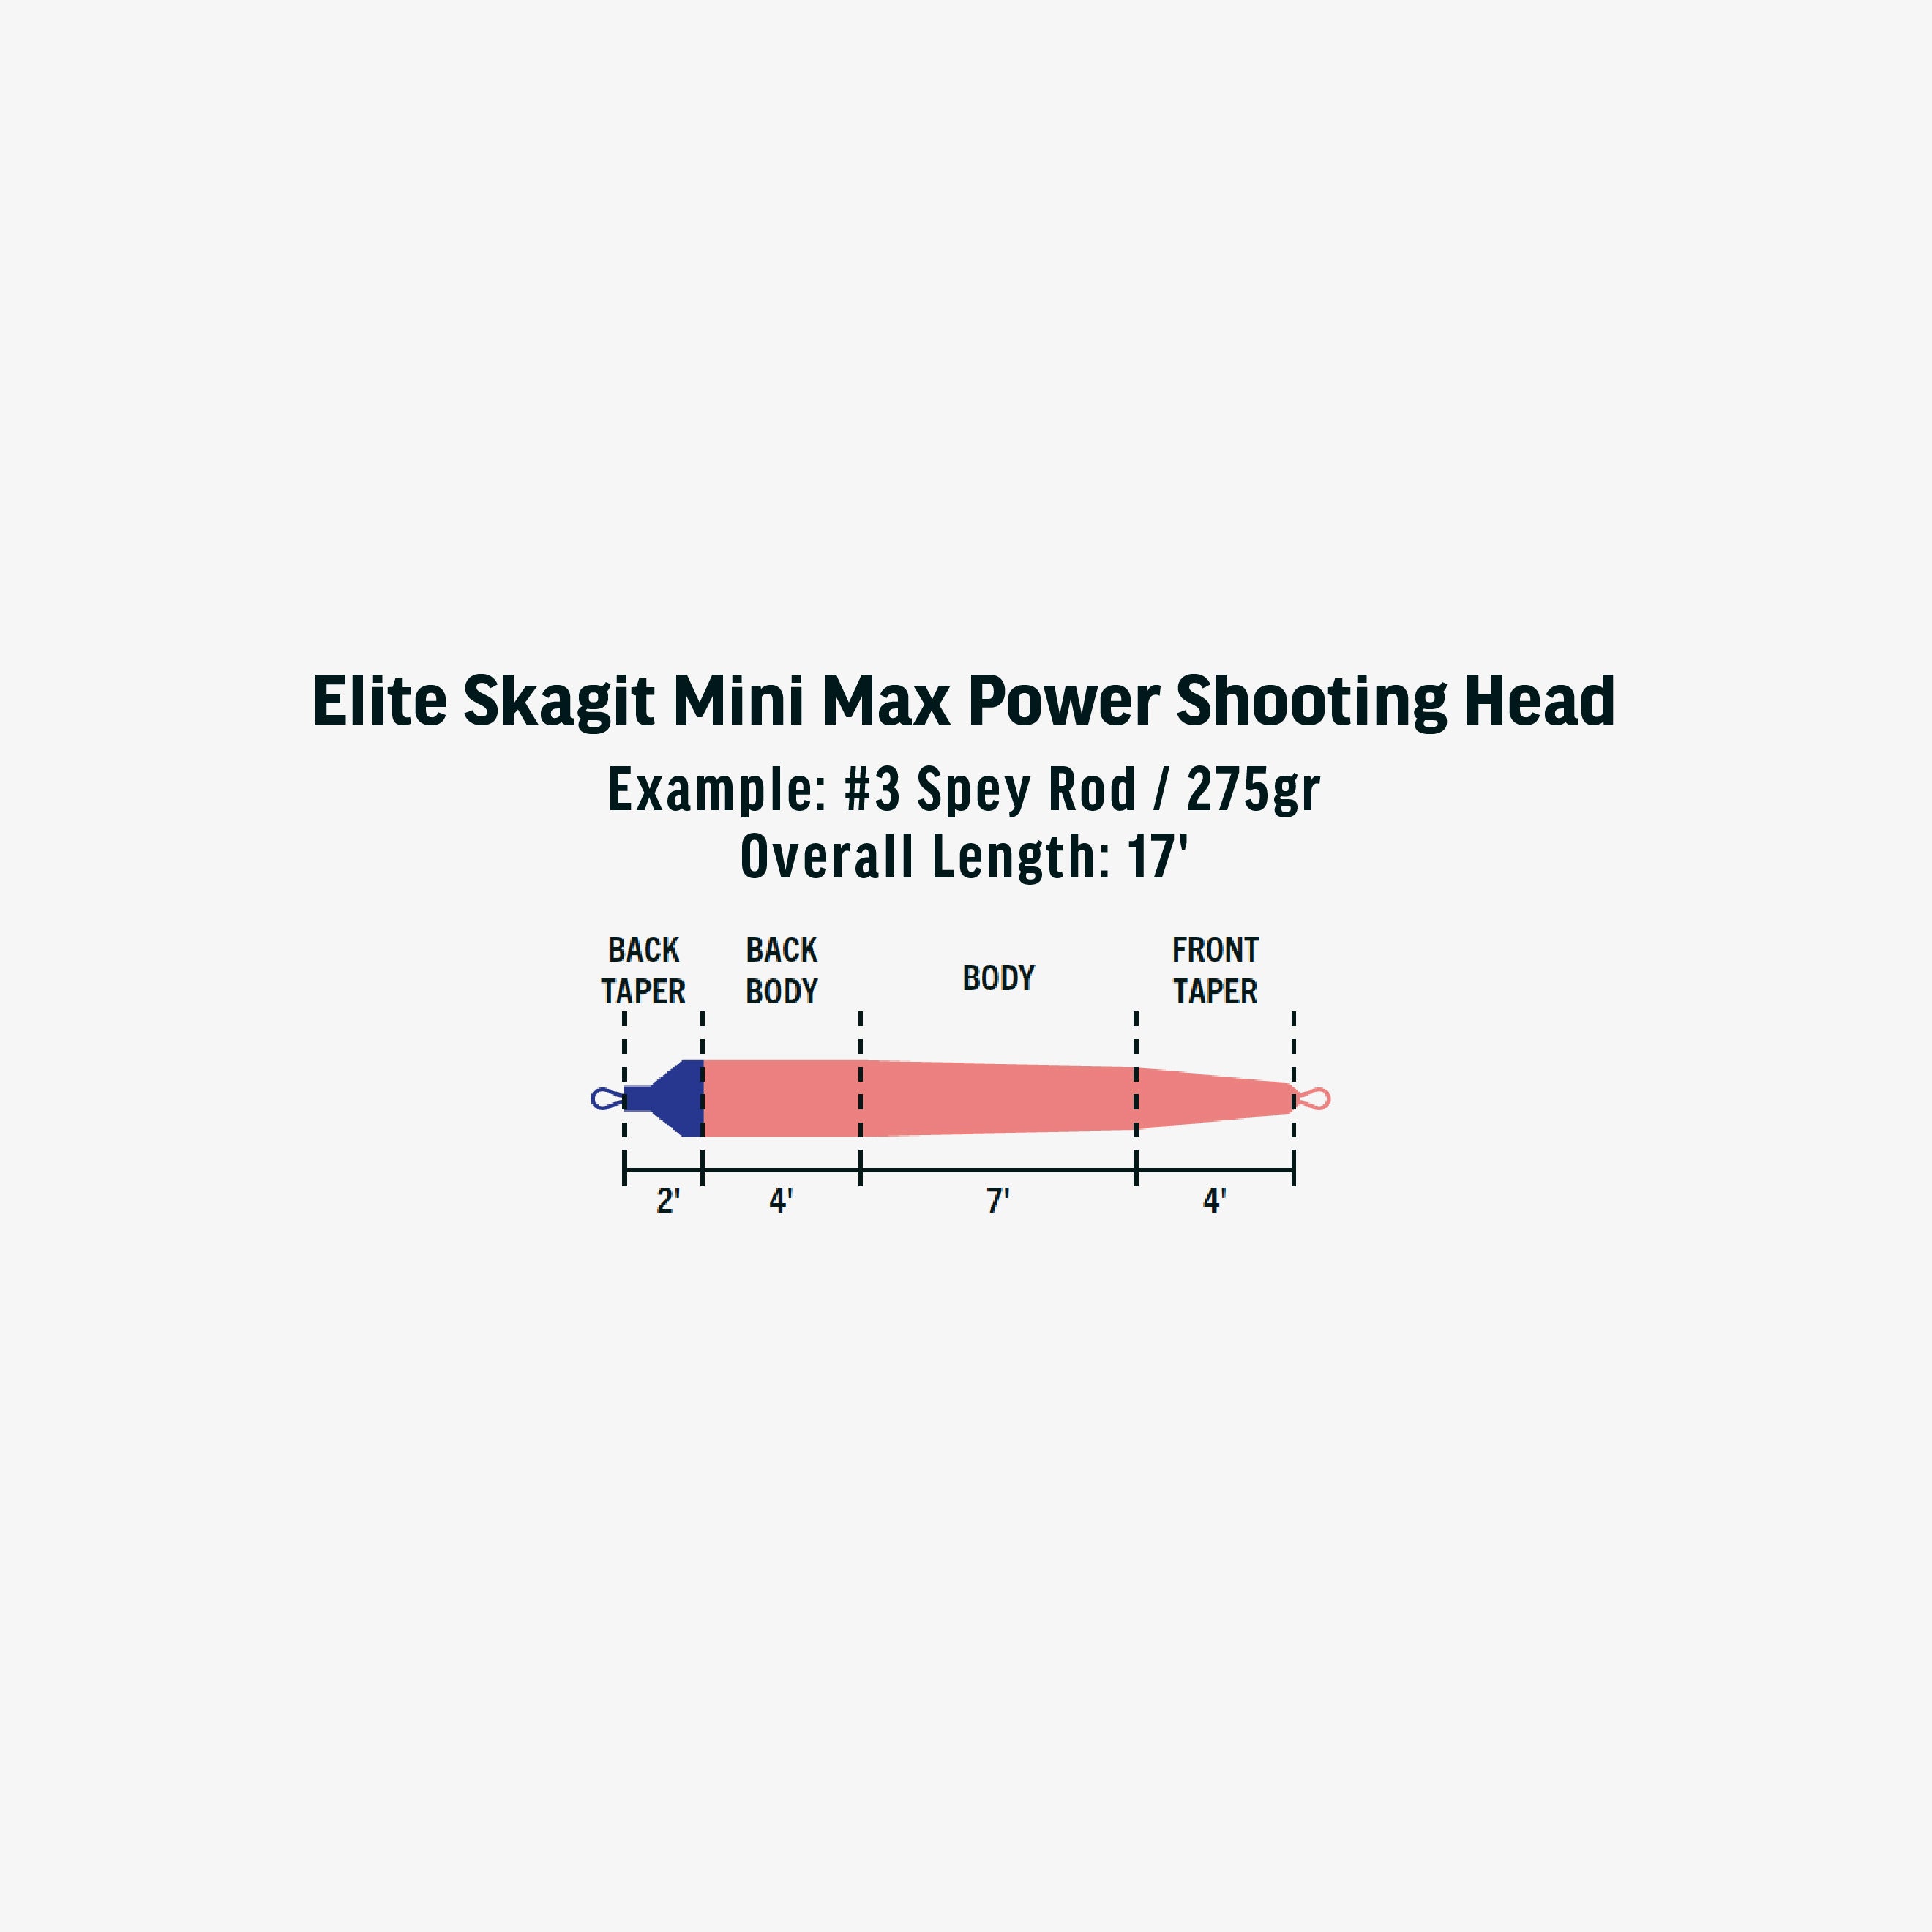 Elite Skagit Mini Max Power Shooting Head